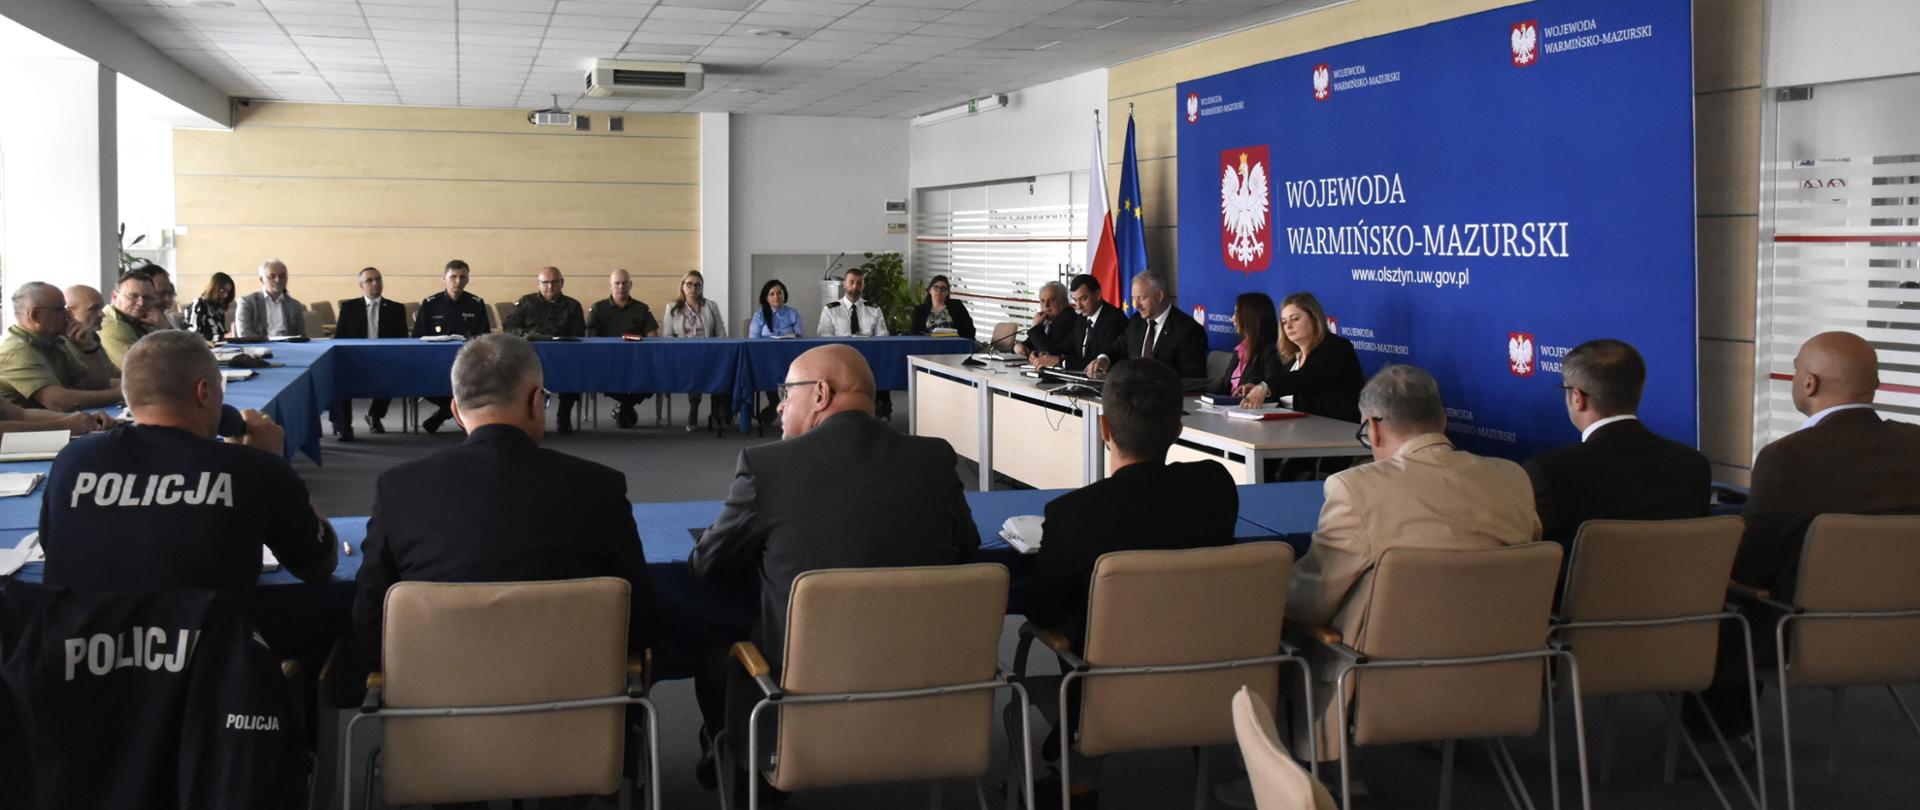 Posiedzenie Warmińsko-Mazurskiego Wojewódzkiego Zespołu Zarządzania Kryzysowego